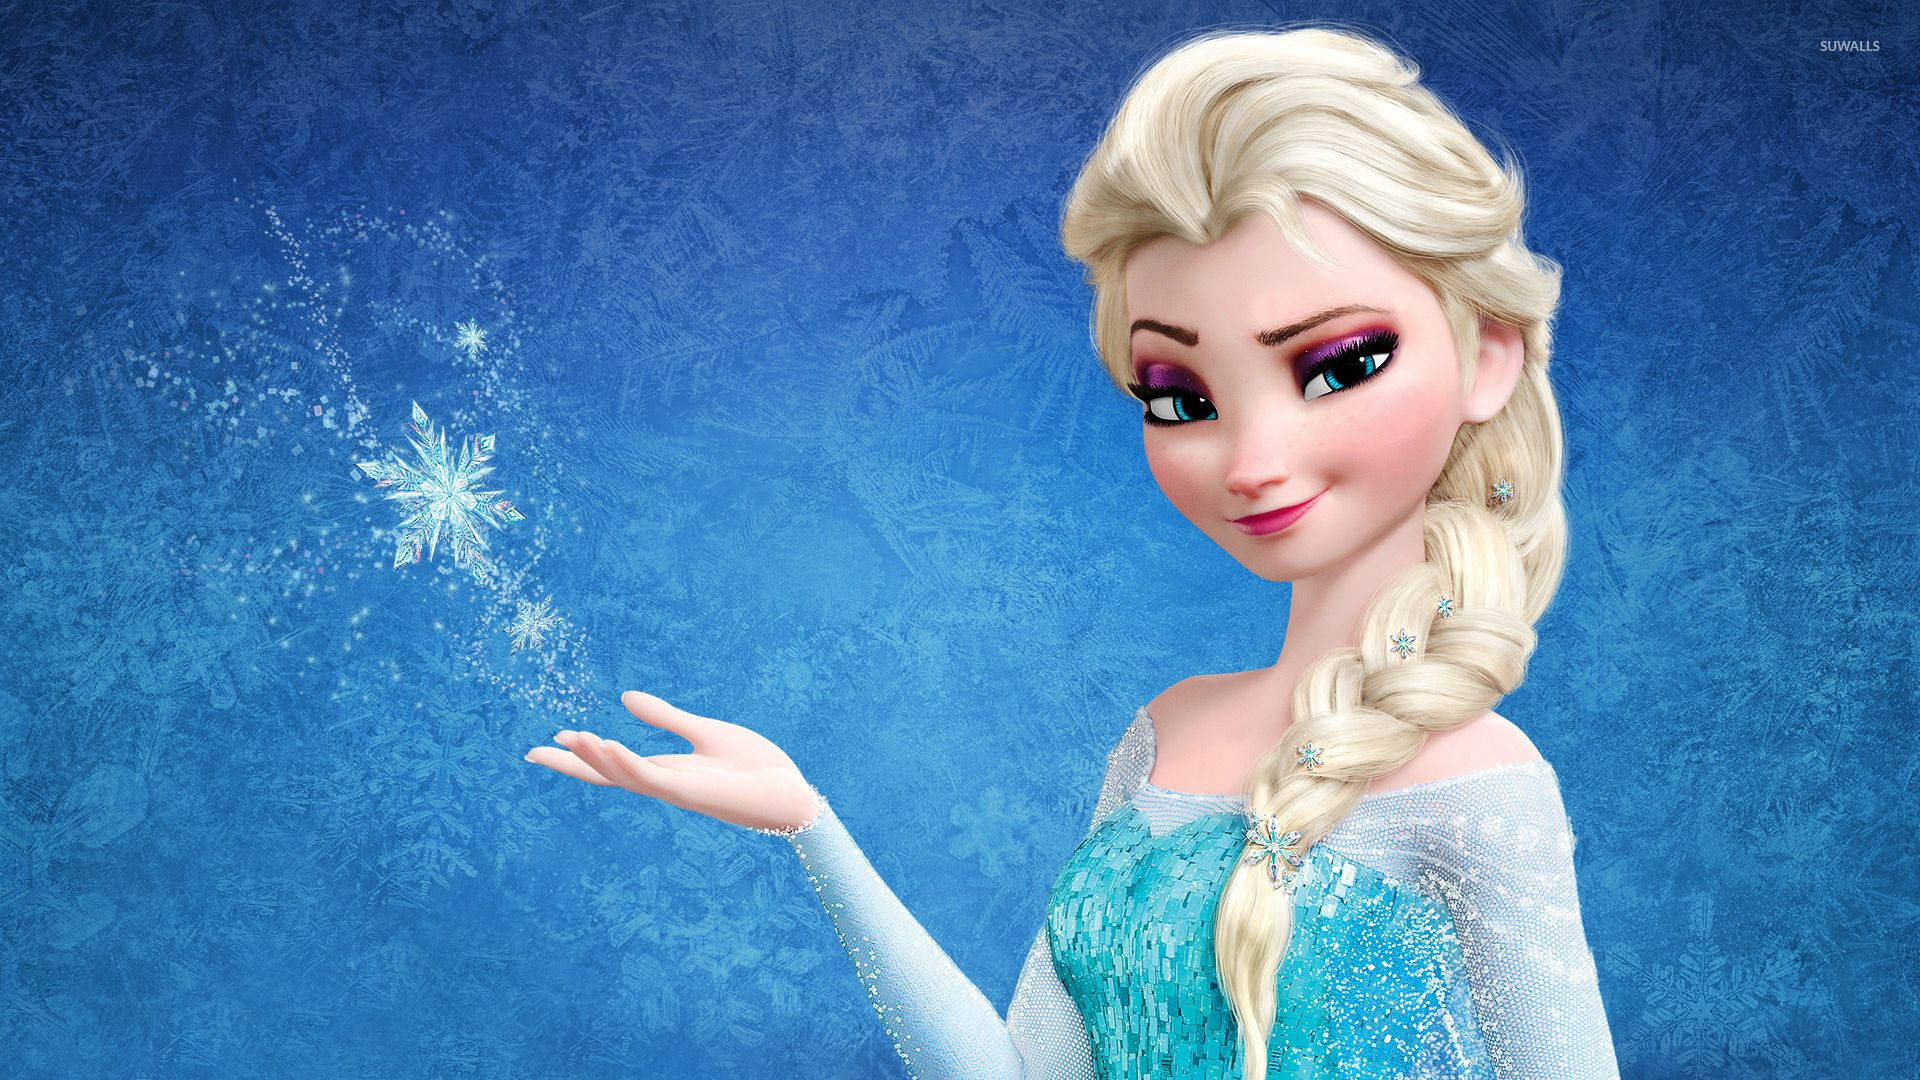 Frozen 2 Queen Elsa Background